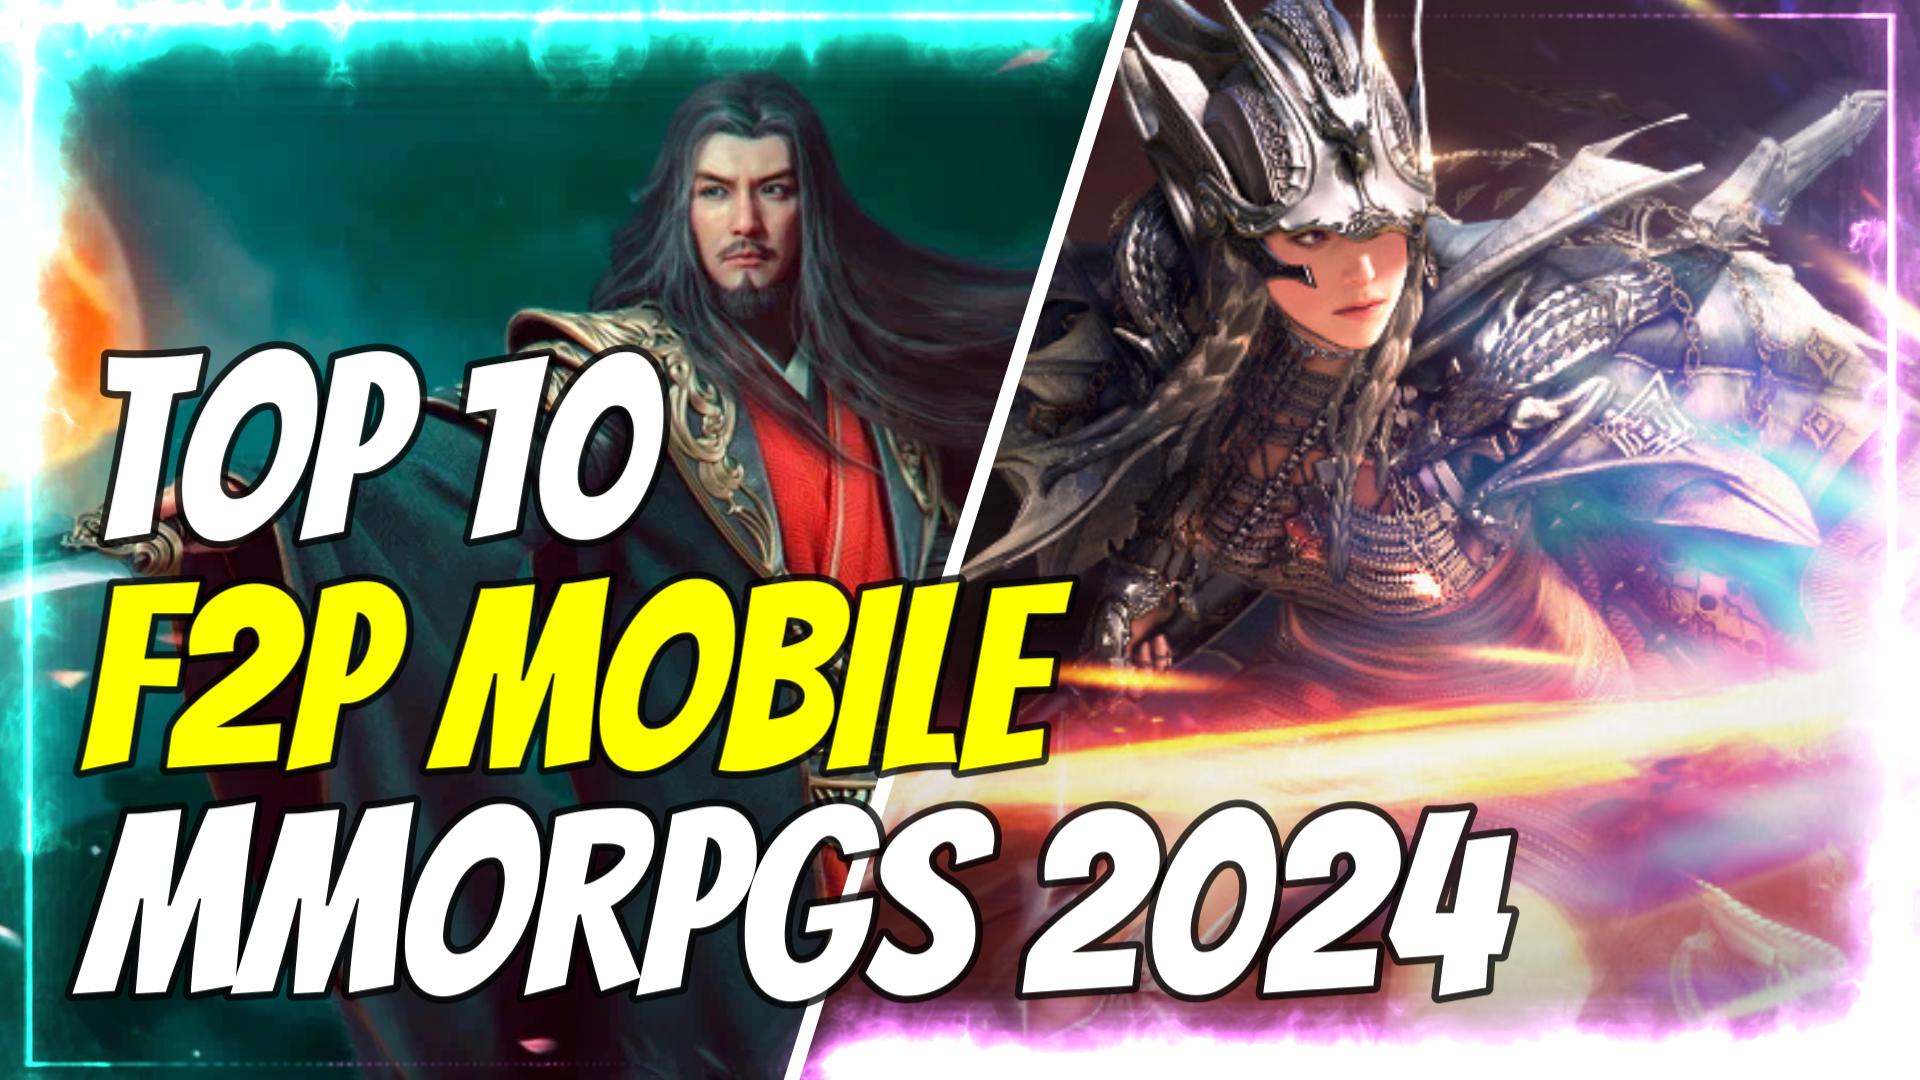 Mobile MMORPGs 2024